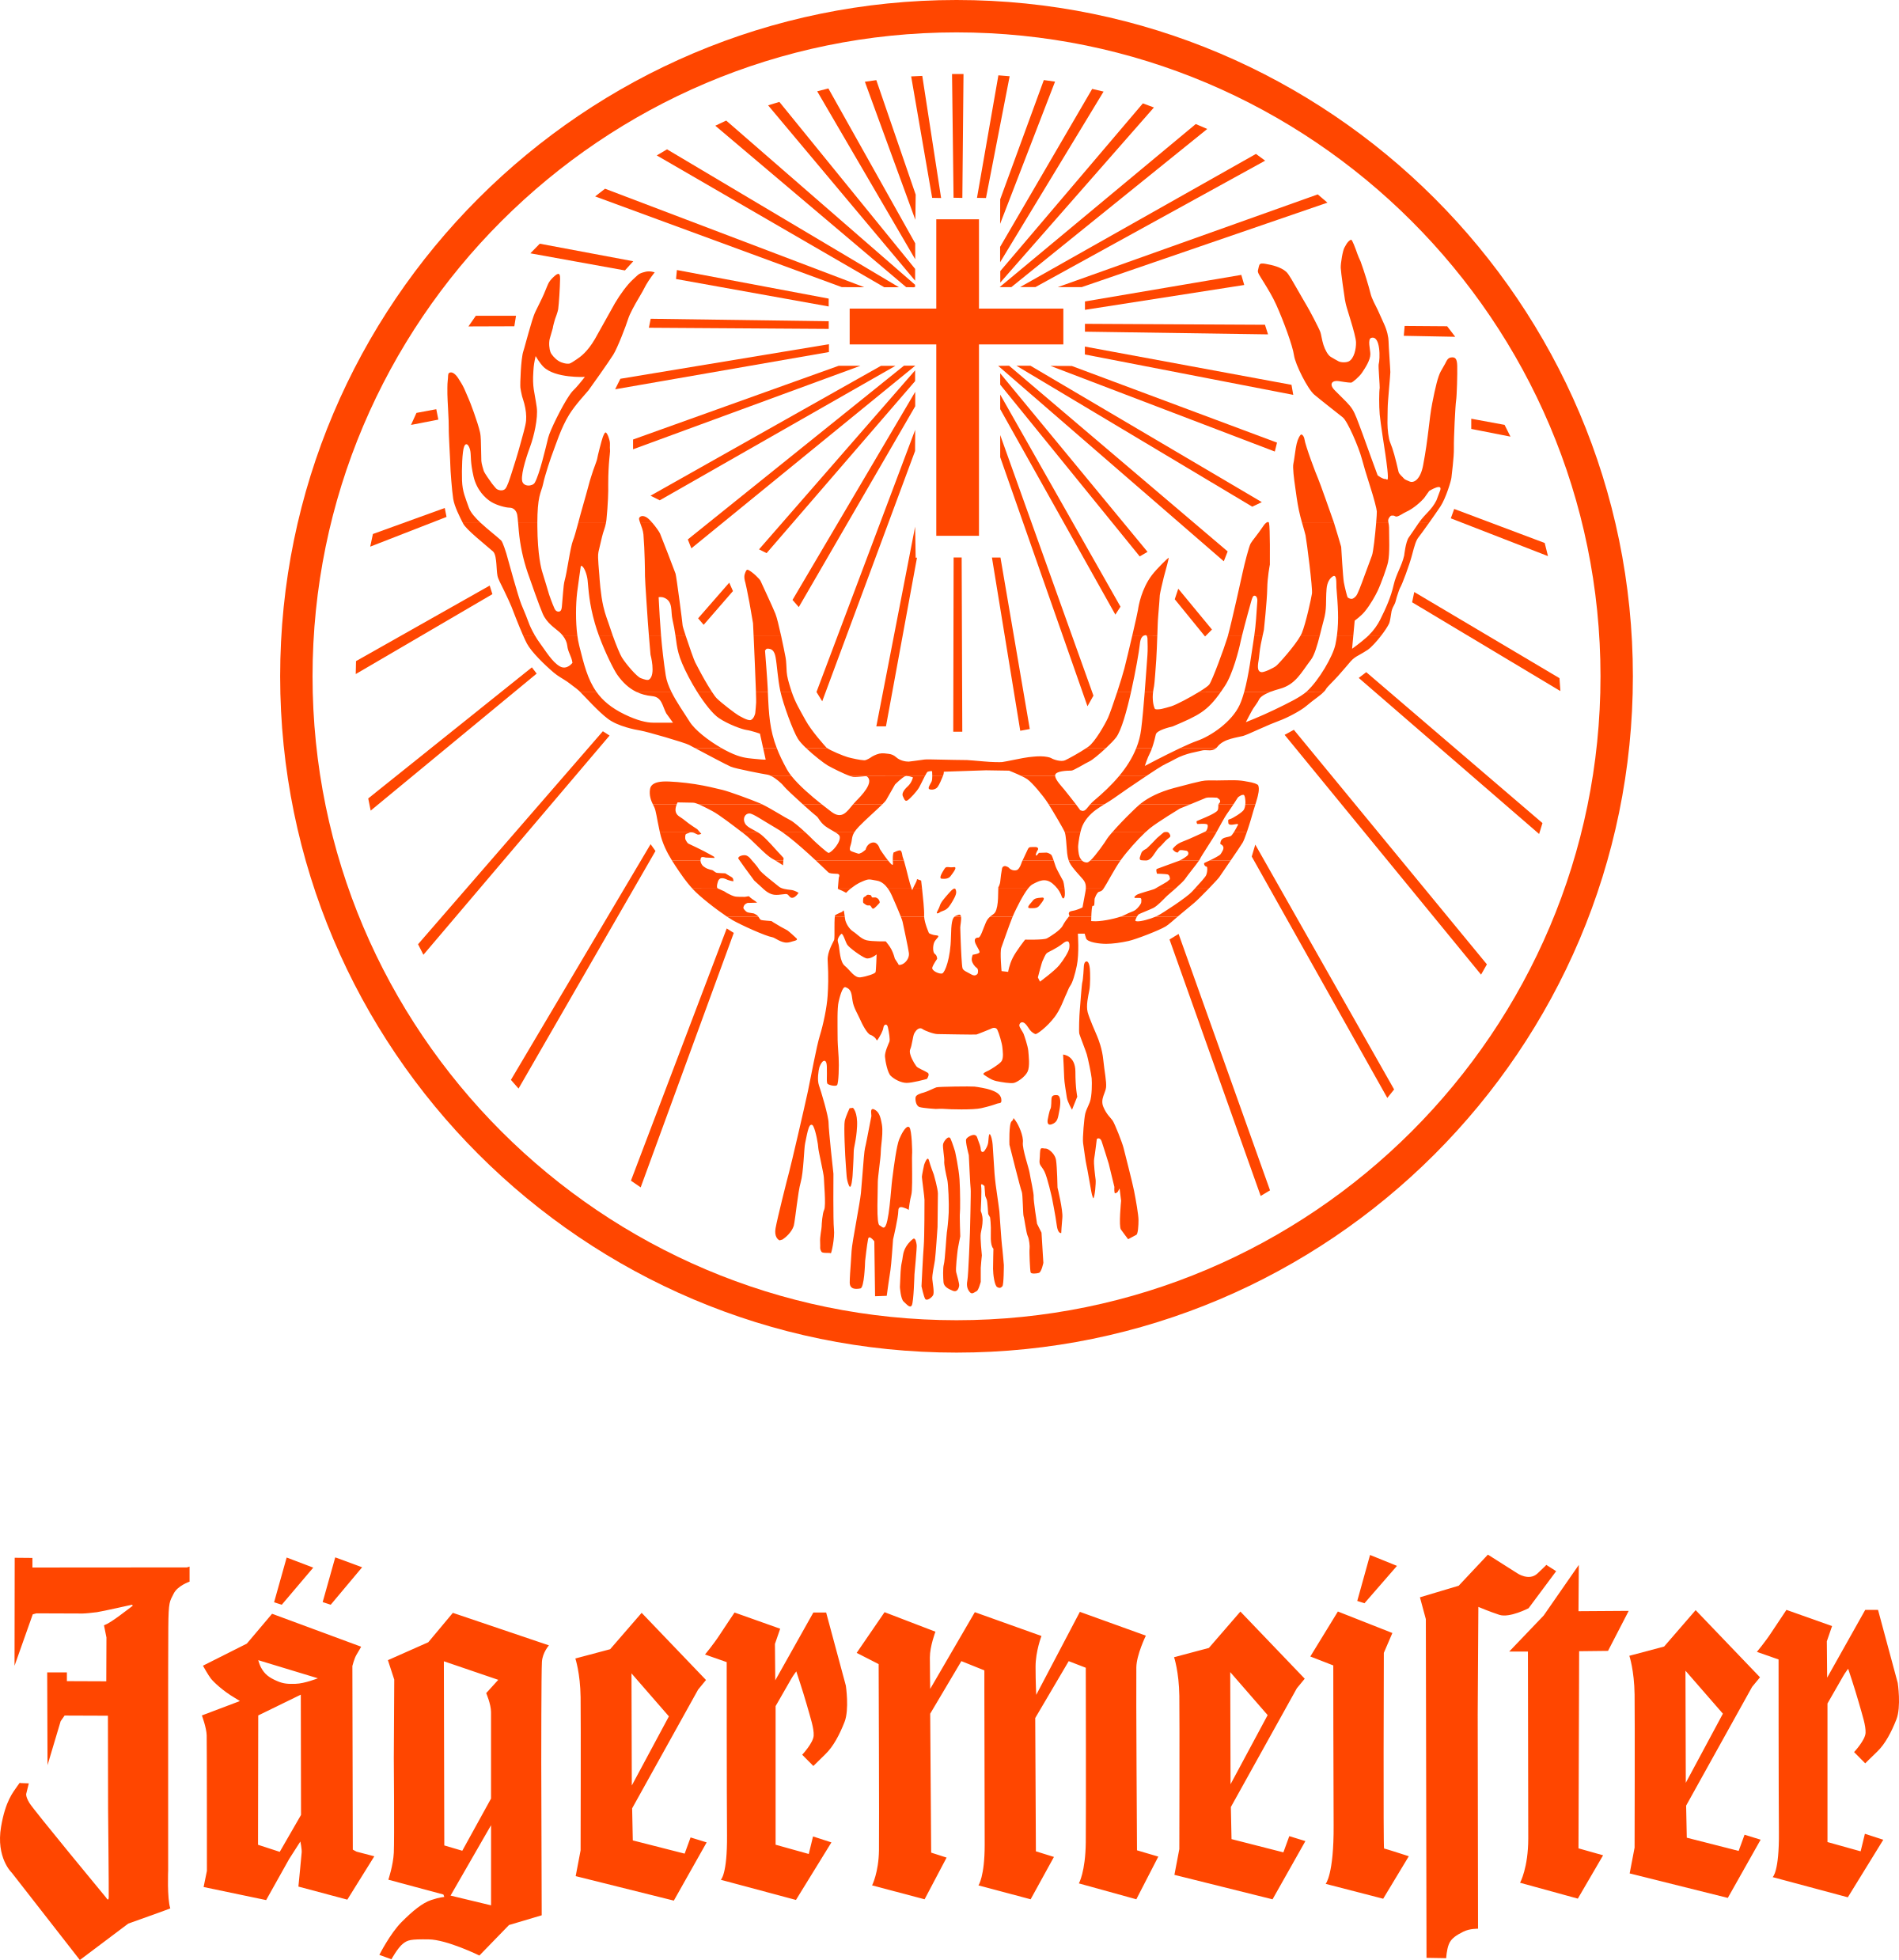 jagermeister-logo-png-transparent.png